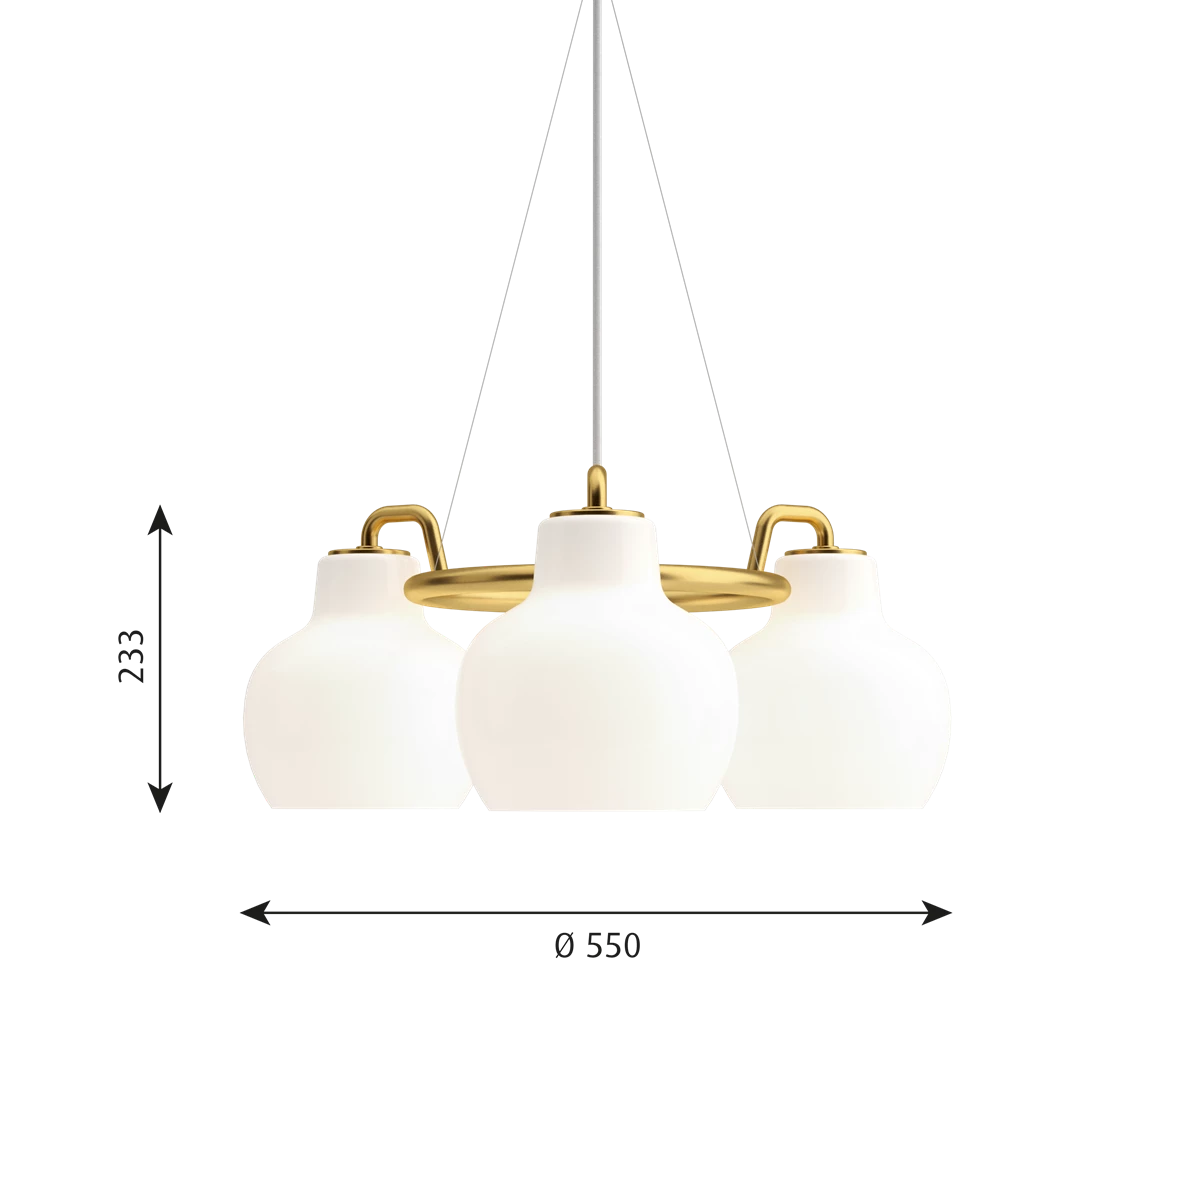 VL Ring Crown 3 Pendant Lamp by Louis Poulsen